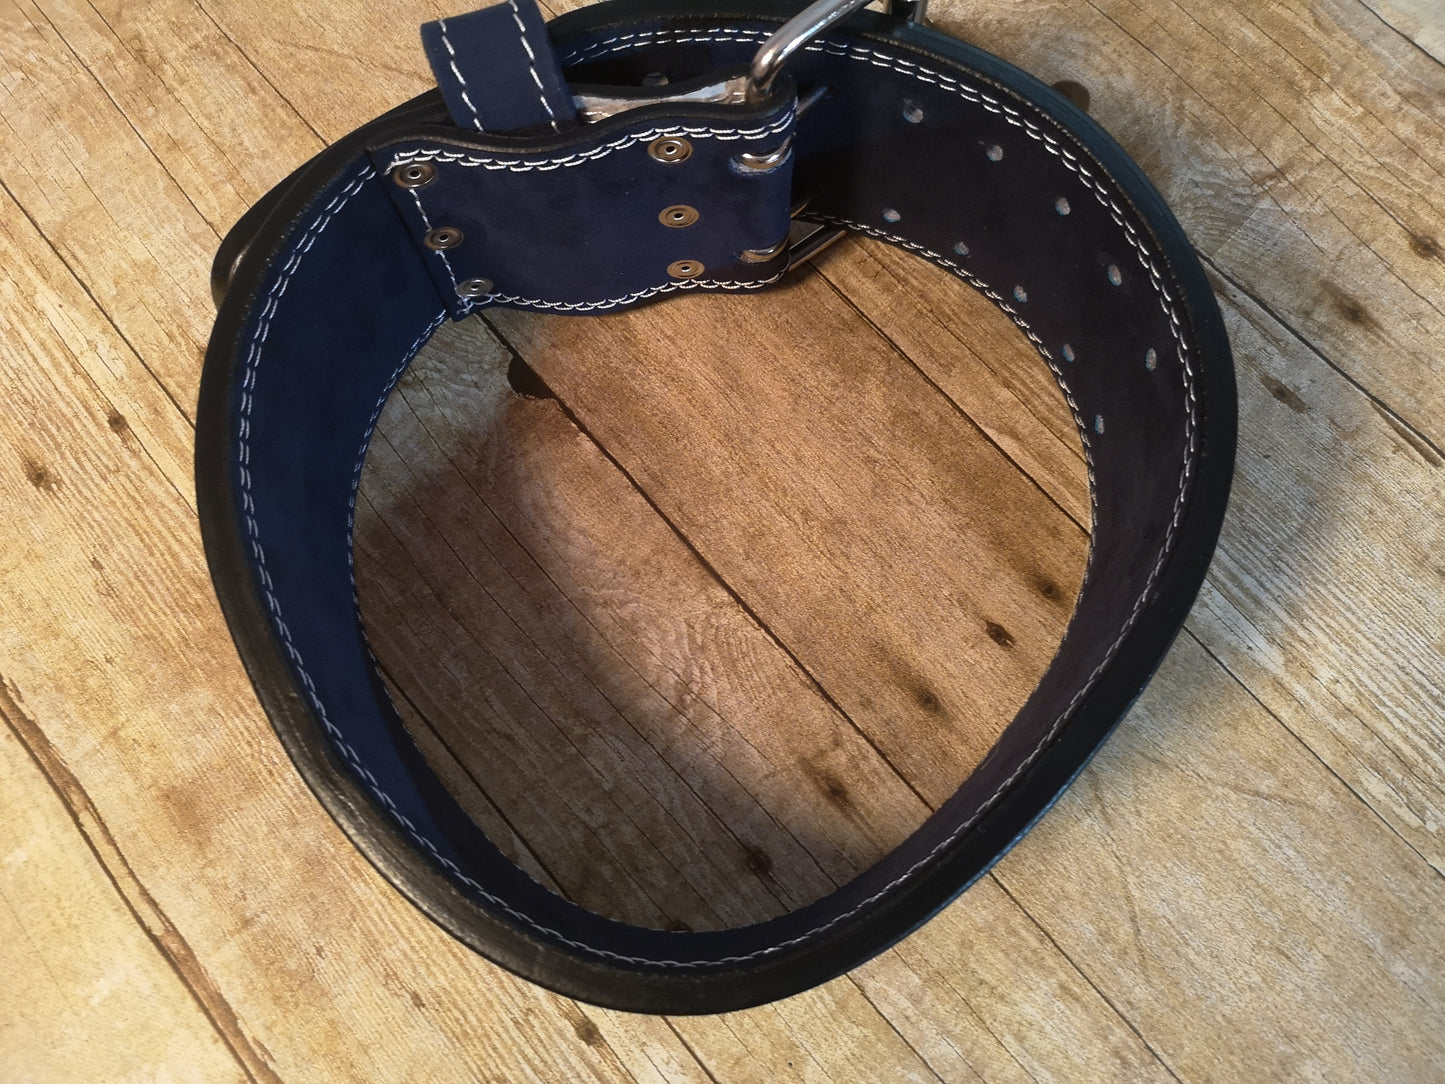 Clearance belt: Navy blue prong belt - Resolute Strength Wear